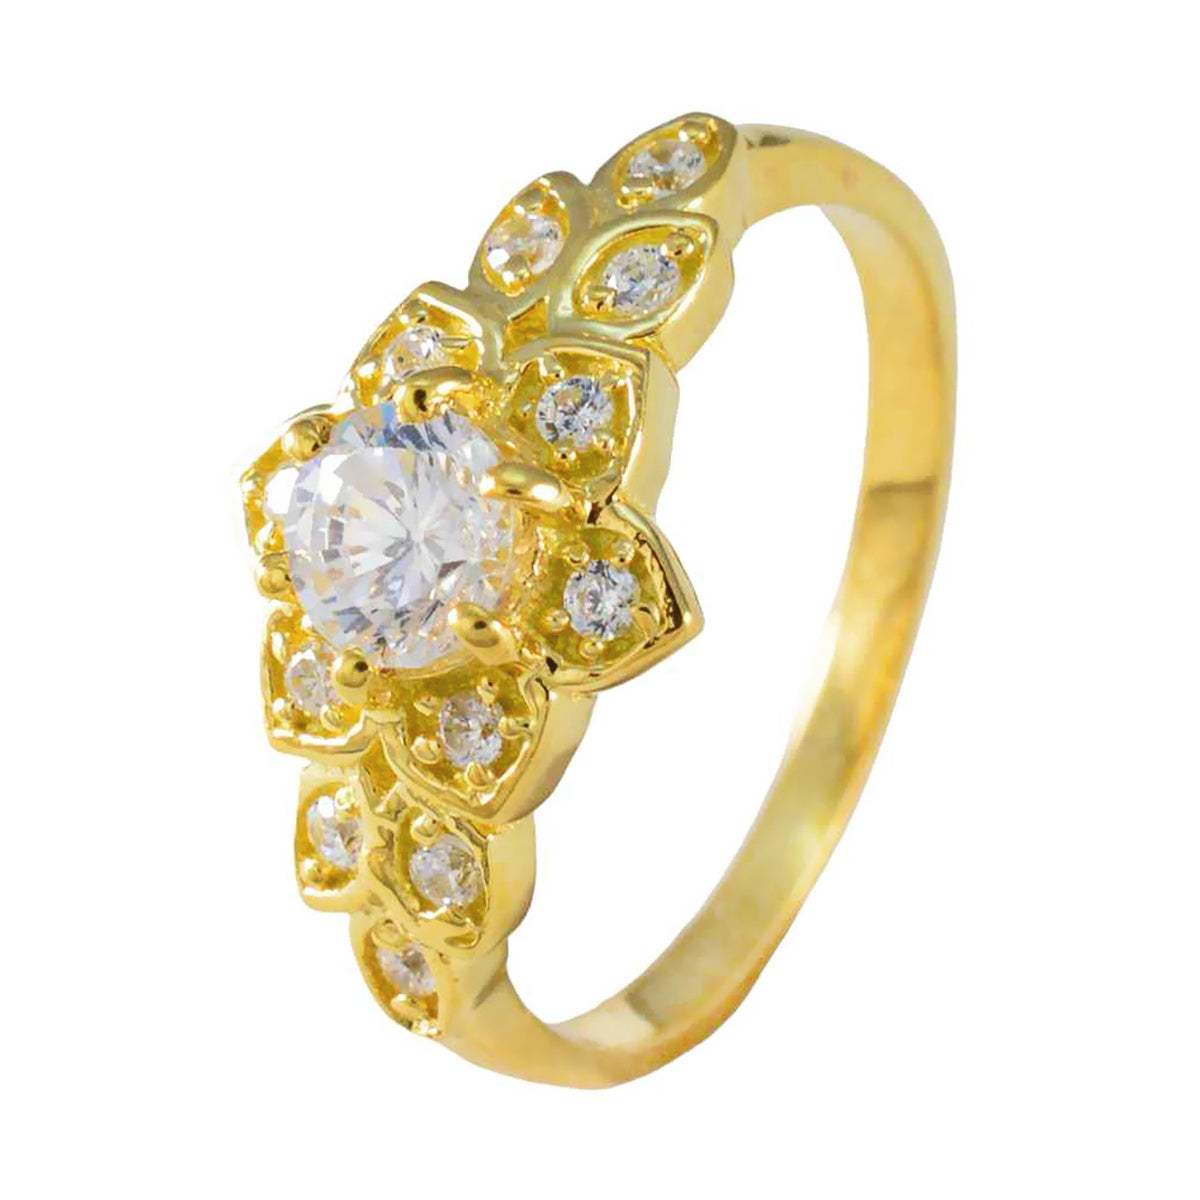 Riyo wenselijke zilveren ring met geelgouden witte CZ-steen ronde vorm Prong Setting stijlvolle sieraden nieuwjaarsring